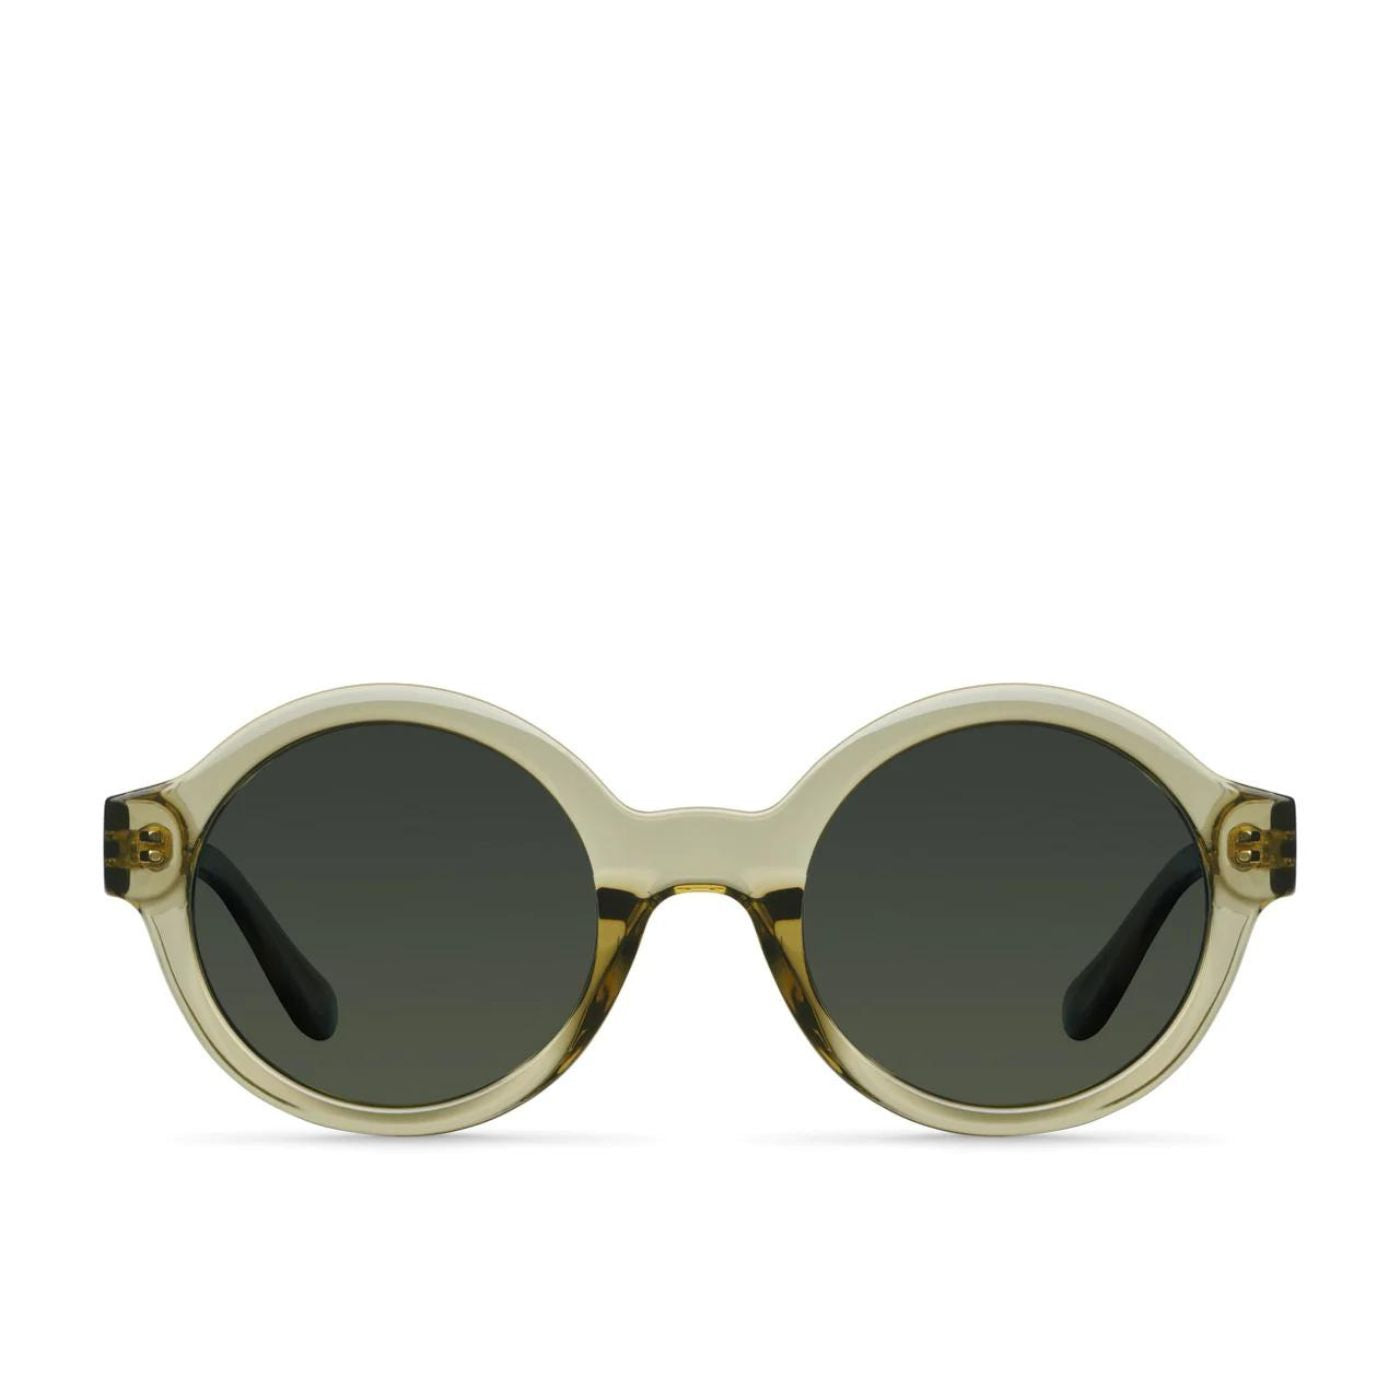 Bashira Sand Olive Meller sunglasses